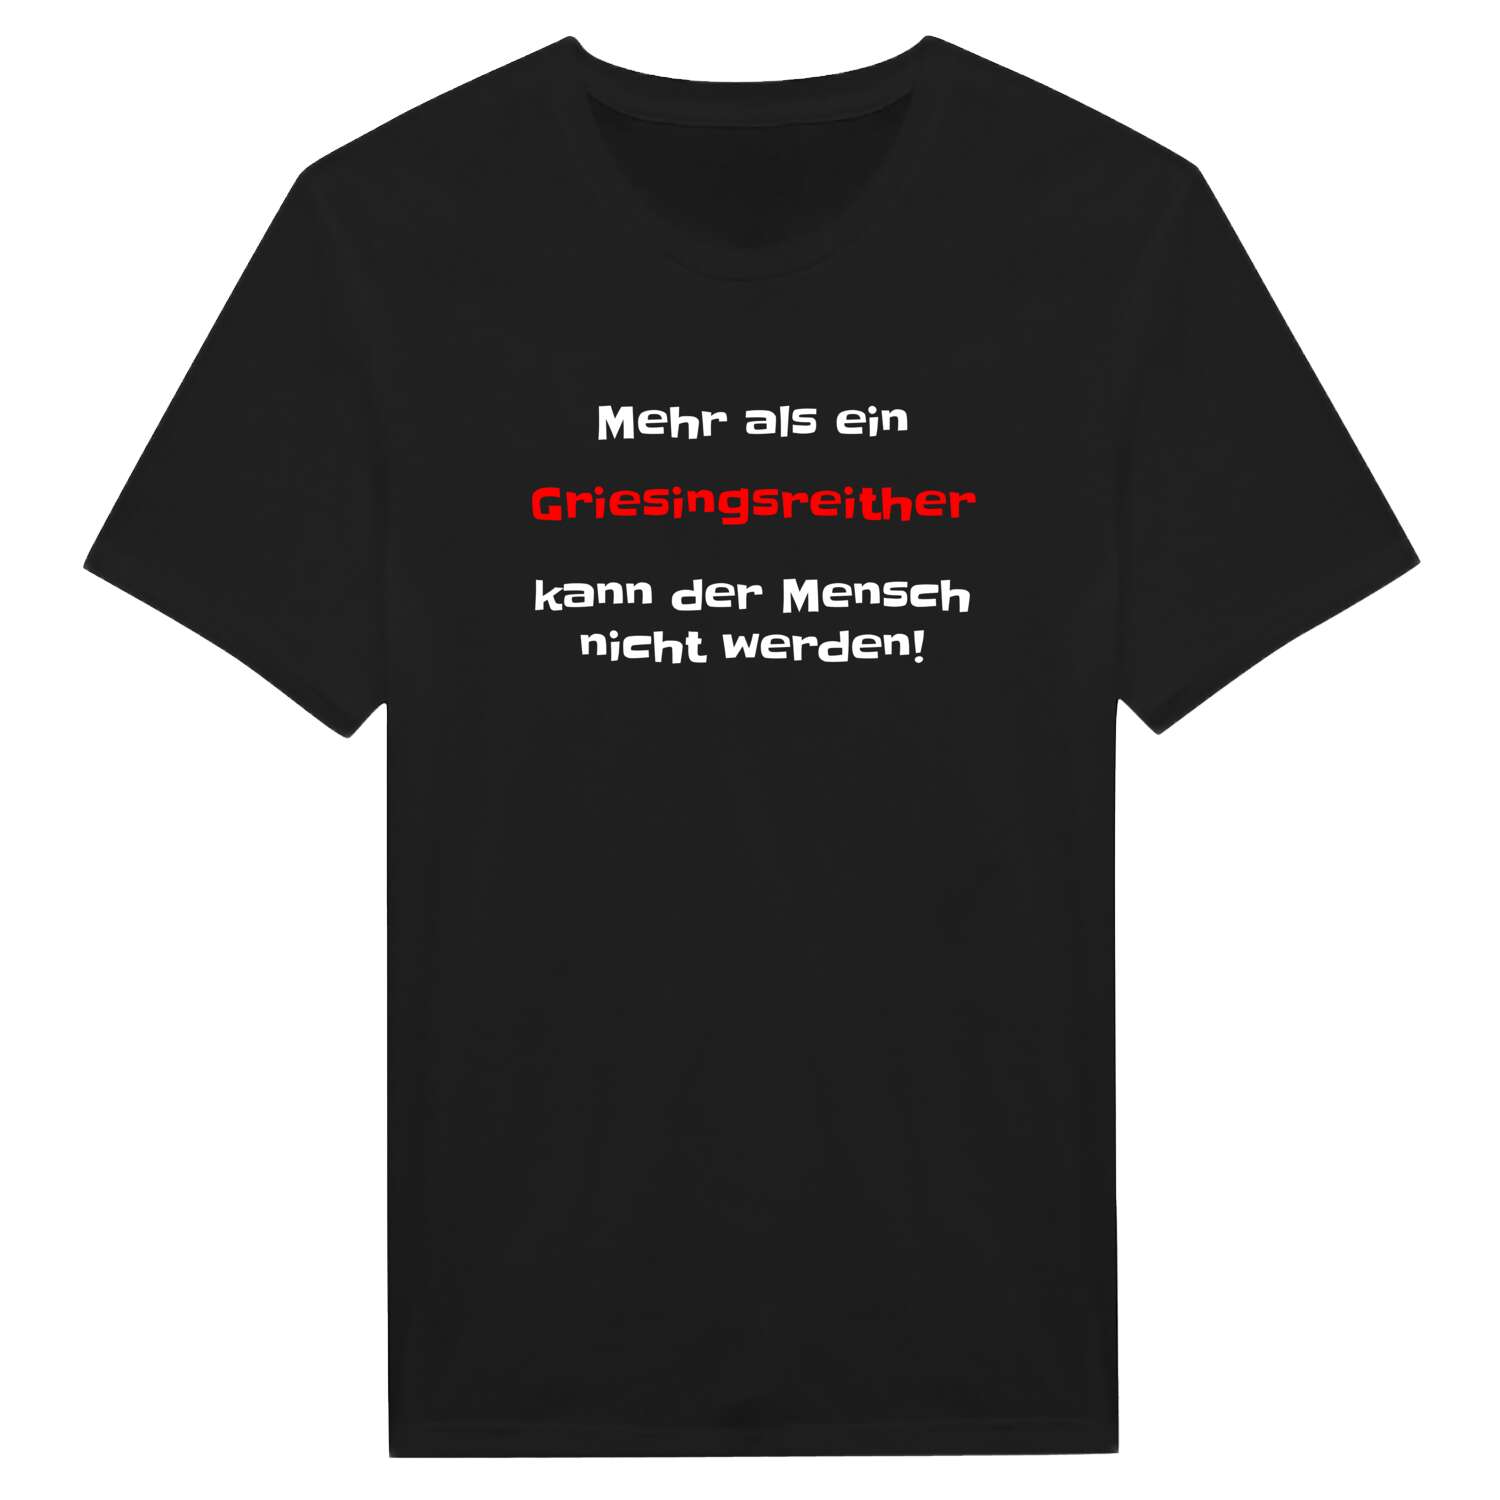 Griesingsreith T-Shirt »Mehr als ein«